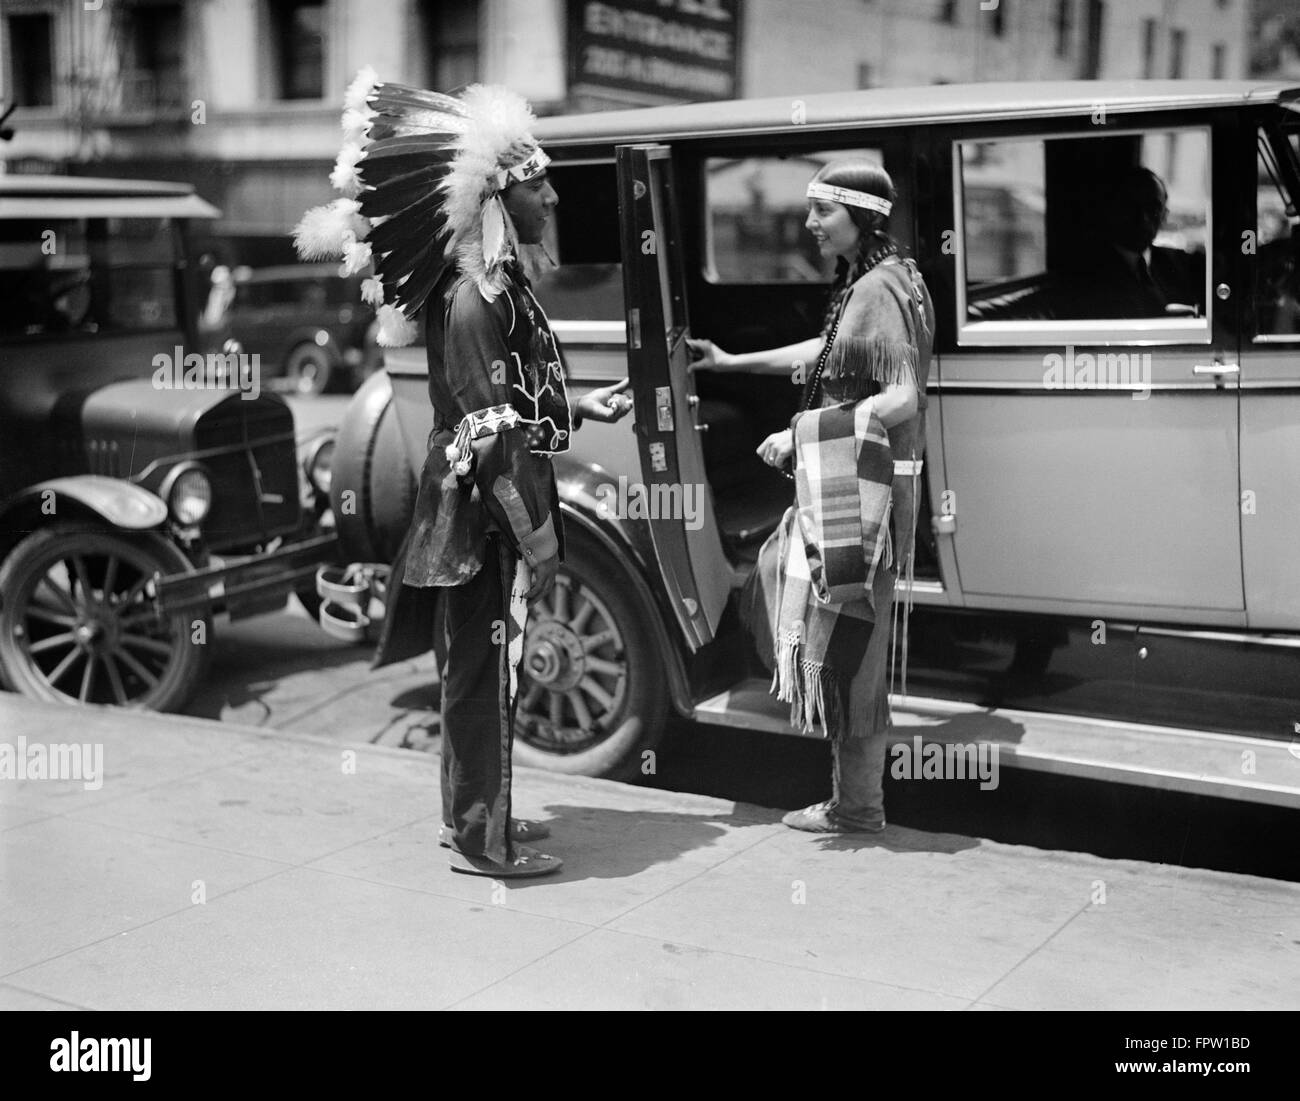 1930ER JAHREN NATIVE AMERICAN INDIAN PAAR TRAGEN TRADITIONELLE KLEIDUNG  MANN IN FEDER KOPFSCHMUCK UND FRAU INS AUTO TAXI CAB Stockfotografie - Alamy